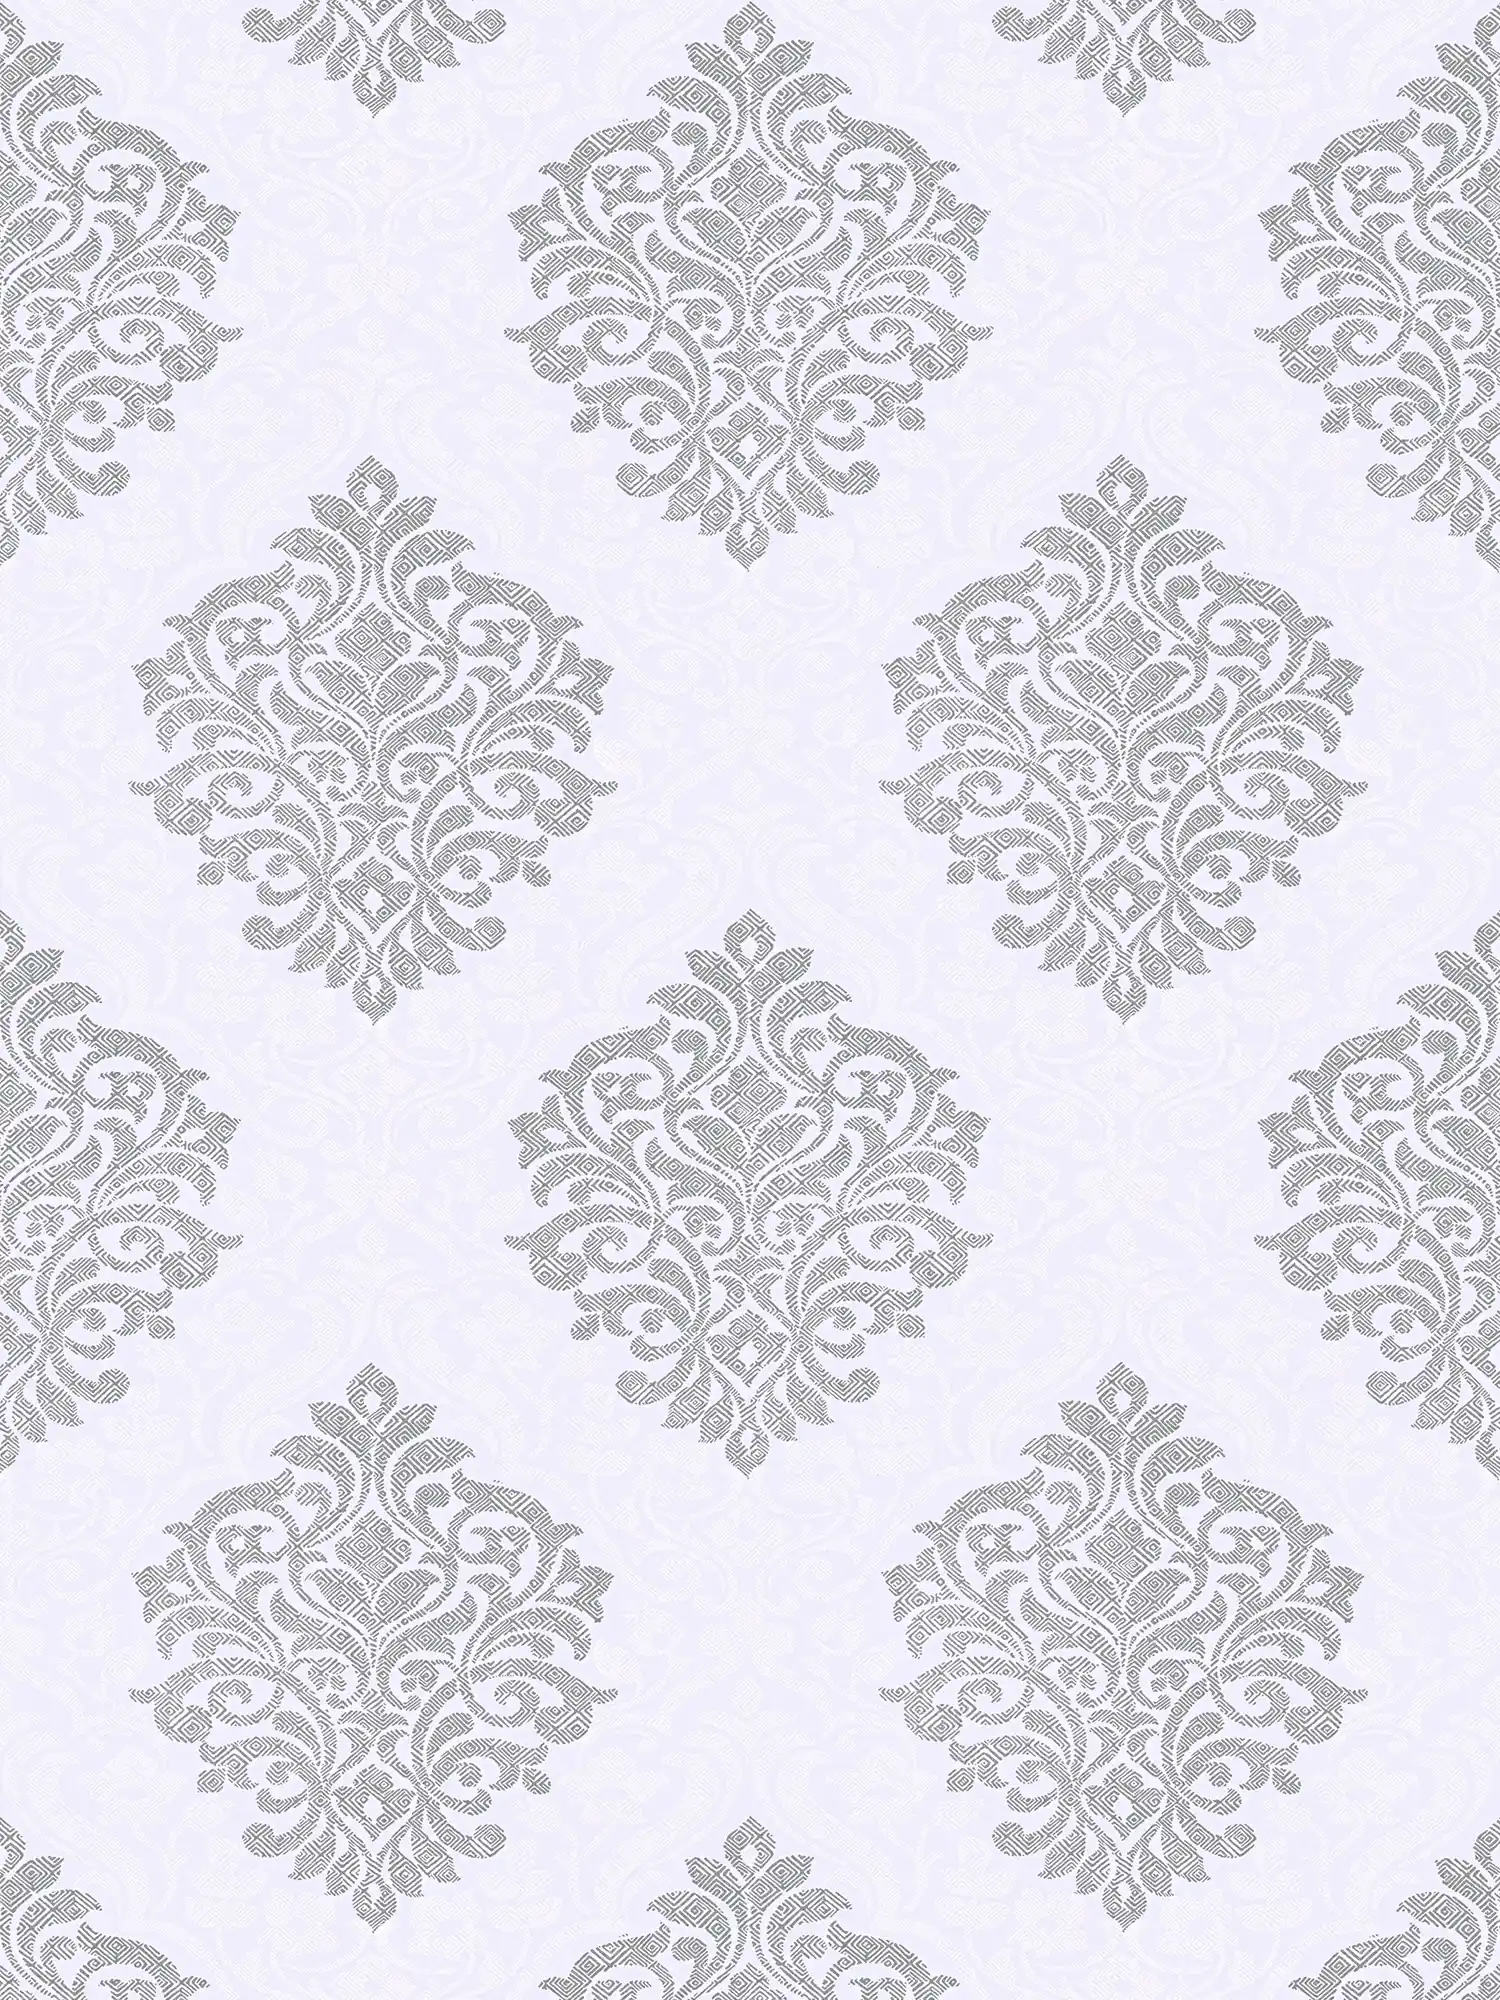 Gebloemd ornamentaal behang ruitpatroon in ethno stijl - grijs, wit, zilver
